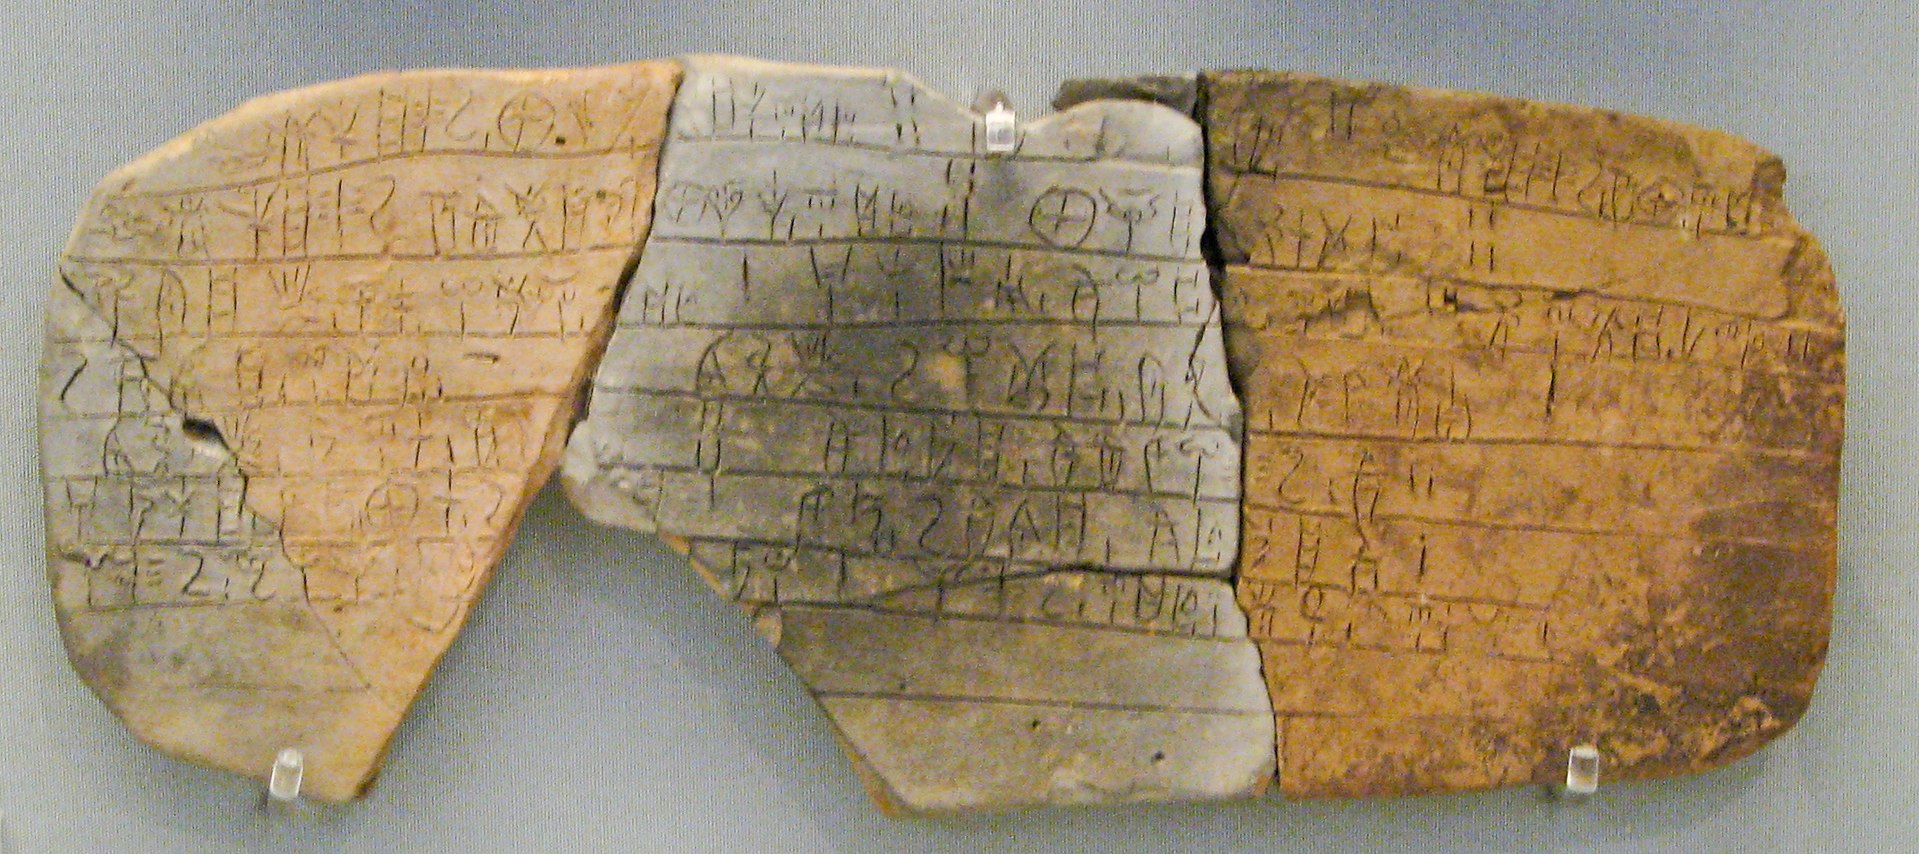 tablette couverte de linéaire B, une langue antique